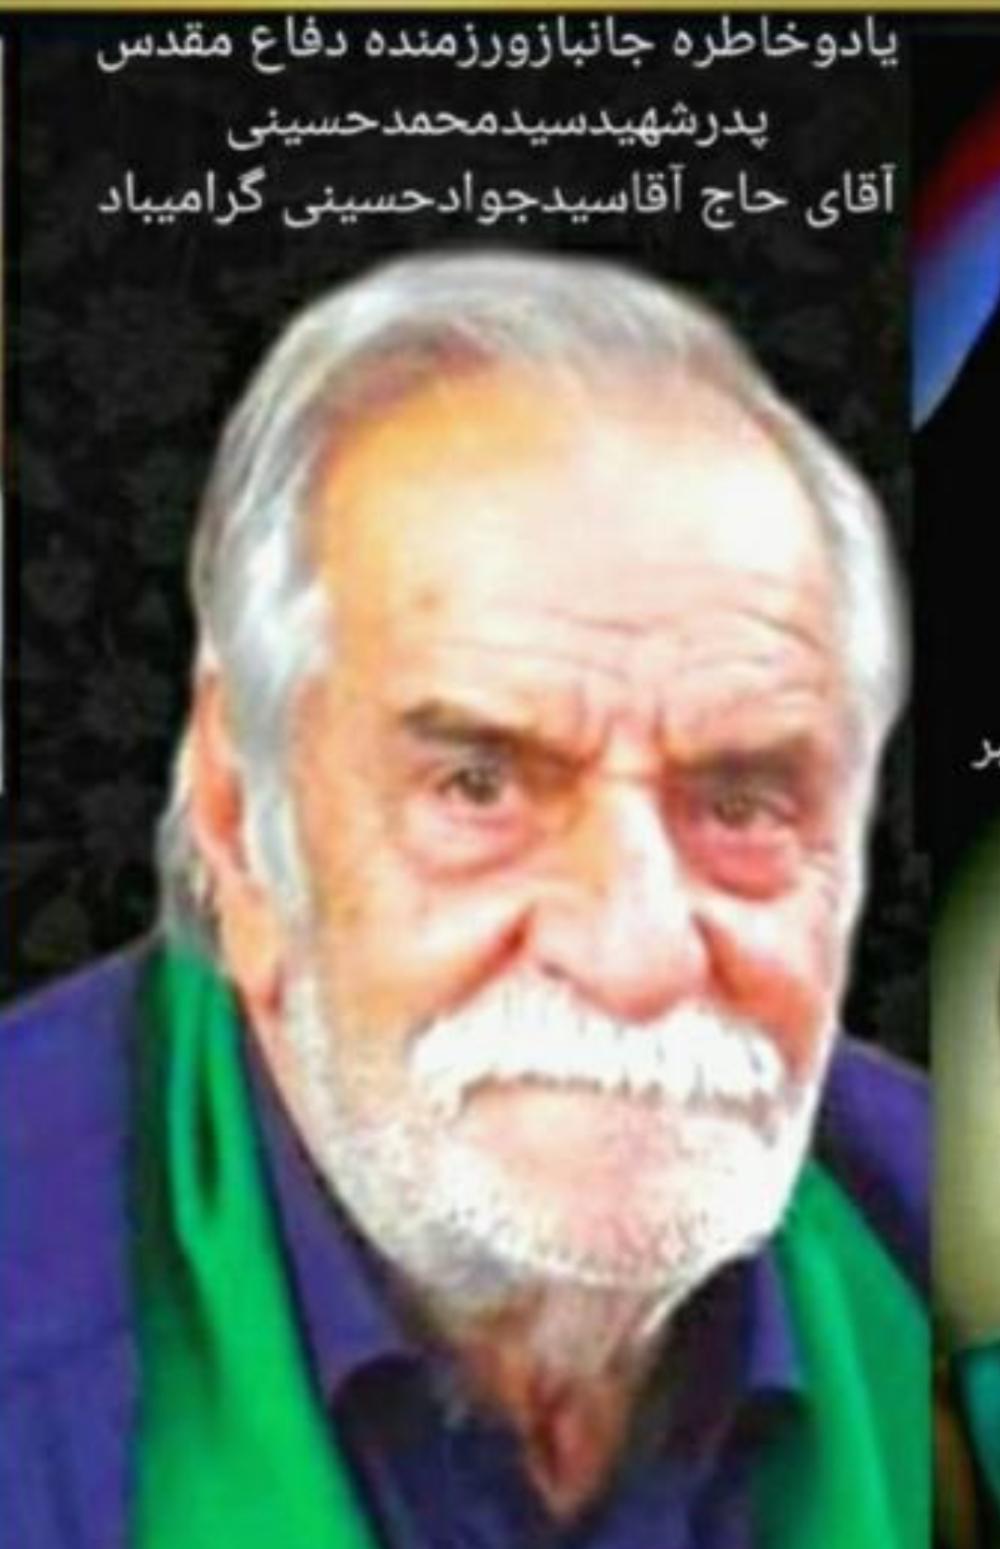 یادبود پدر شهیدسید محمد حسینی،جانباز سرافرازحاج سید جواد حسینی حاج سید جواد حسینی